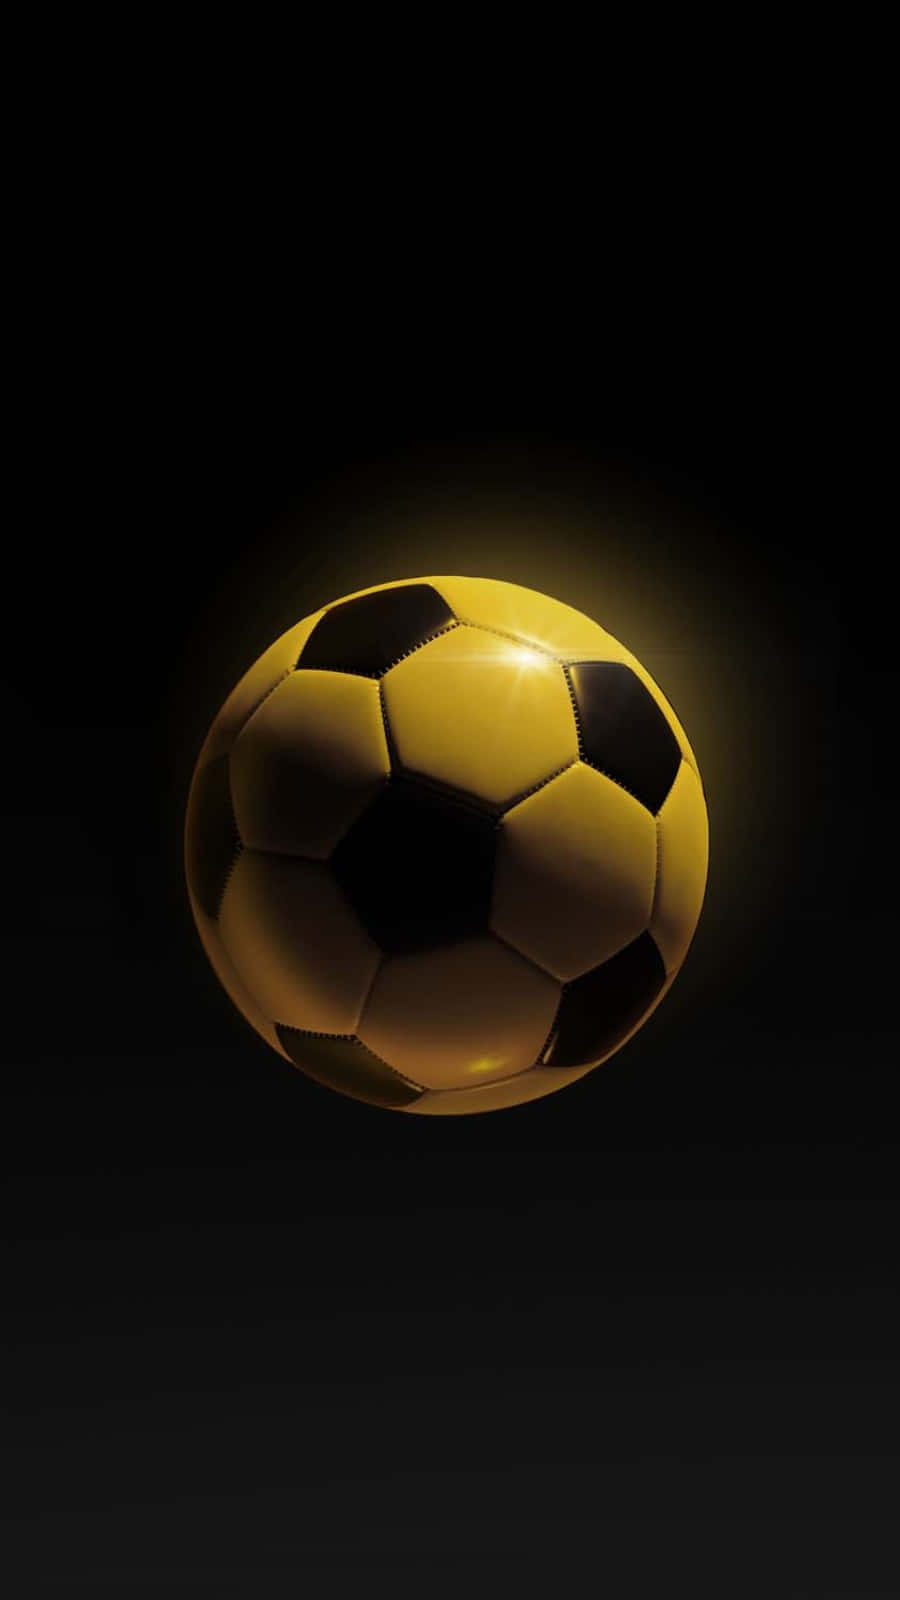 A Bright, Shiny Soccer Ball